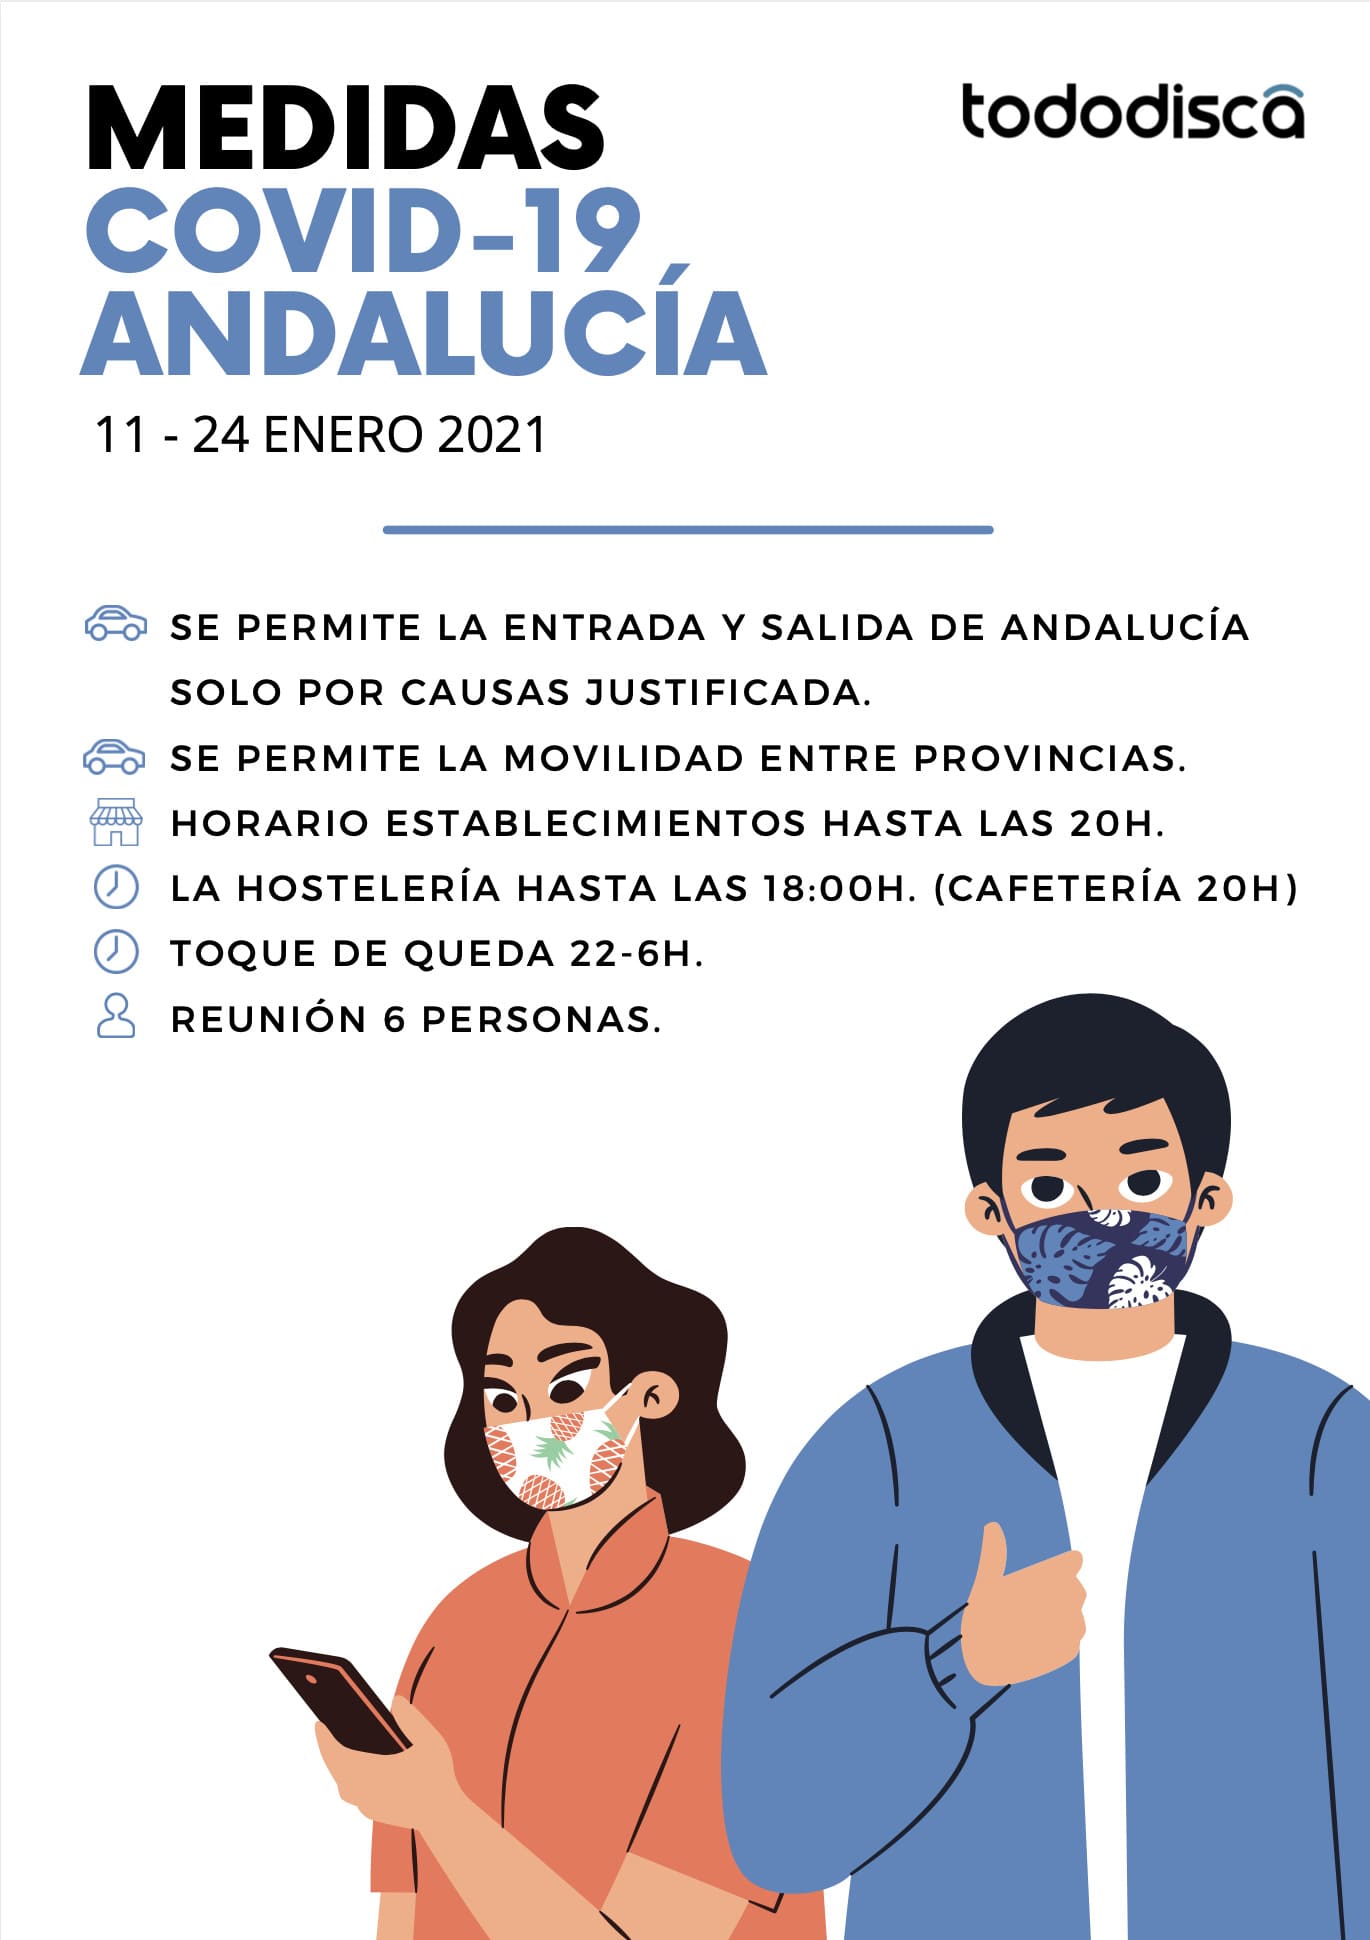 Medidas movilidad y horarios establecimientos Andalucia enero 2021